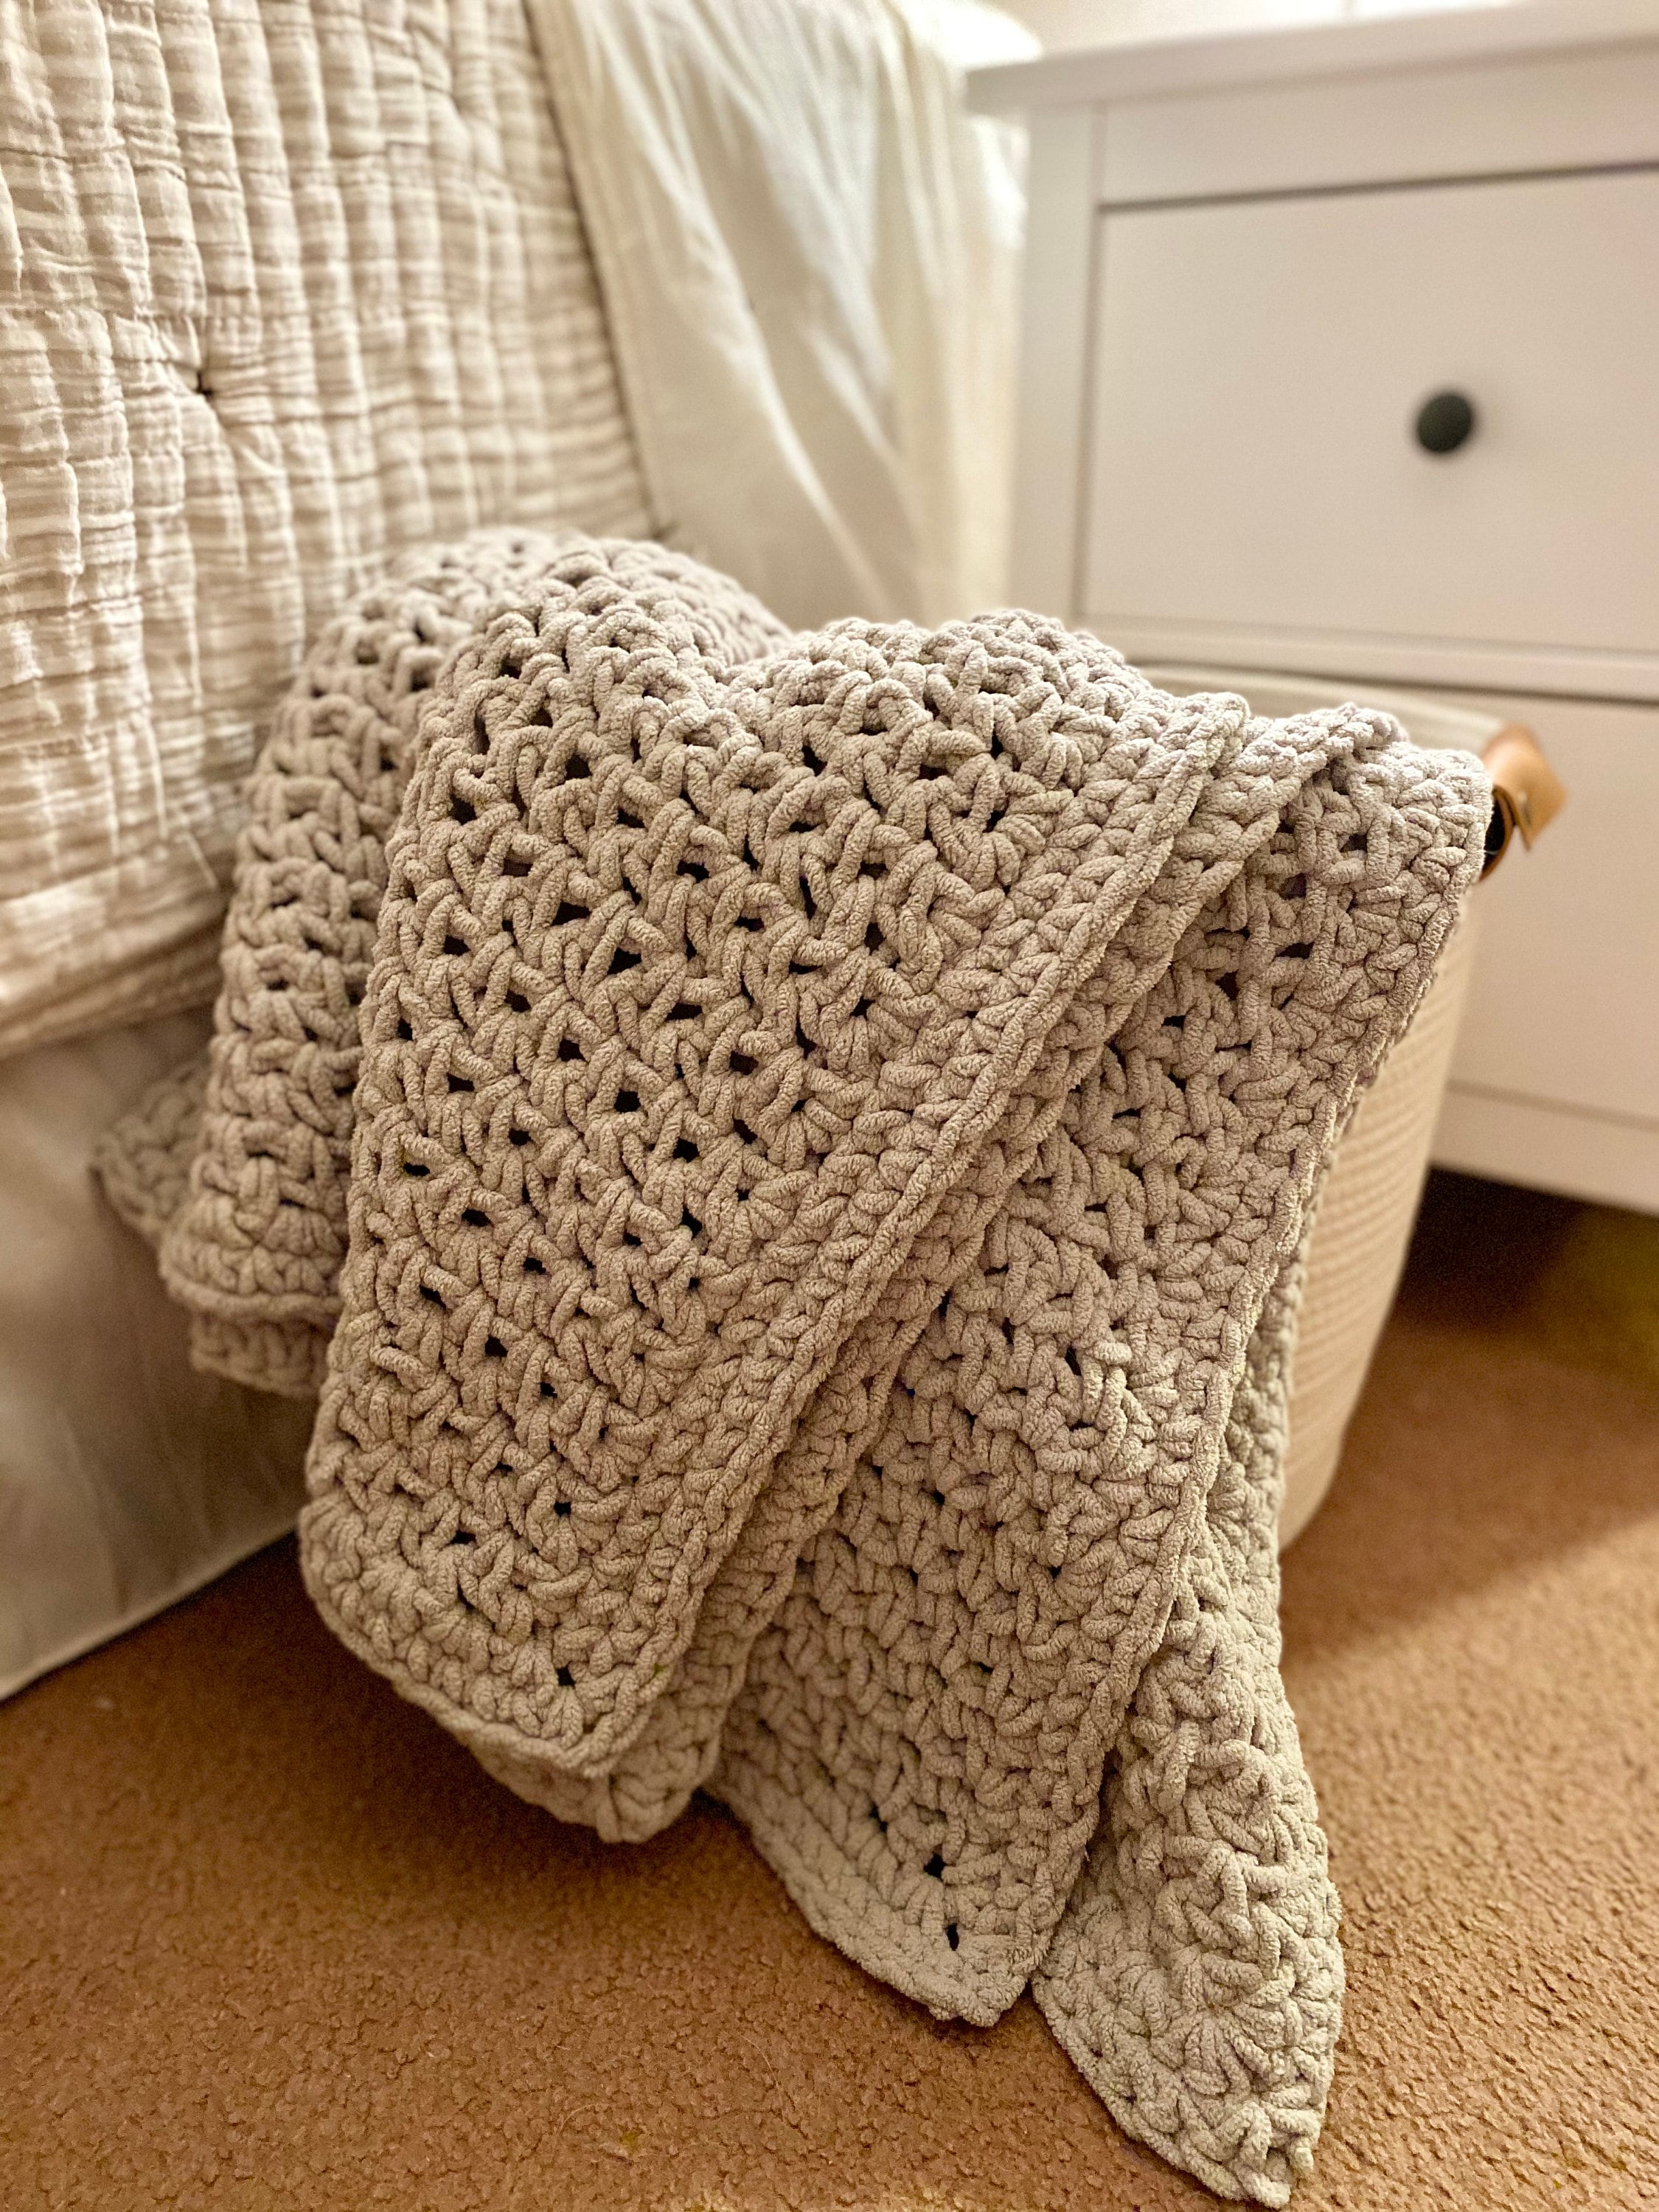 Susan's Family 134*134cm Handmade Crochet Blanket Diy Kit Original